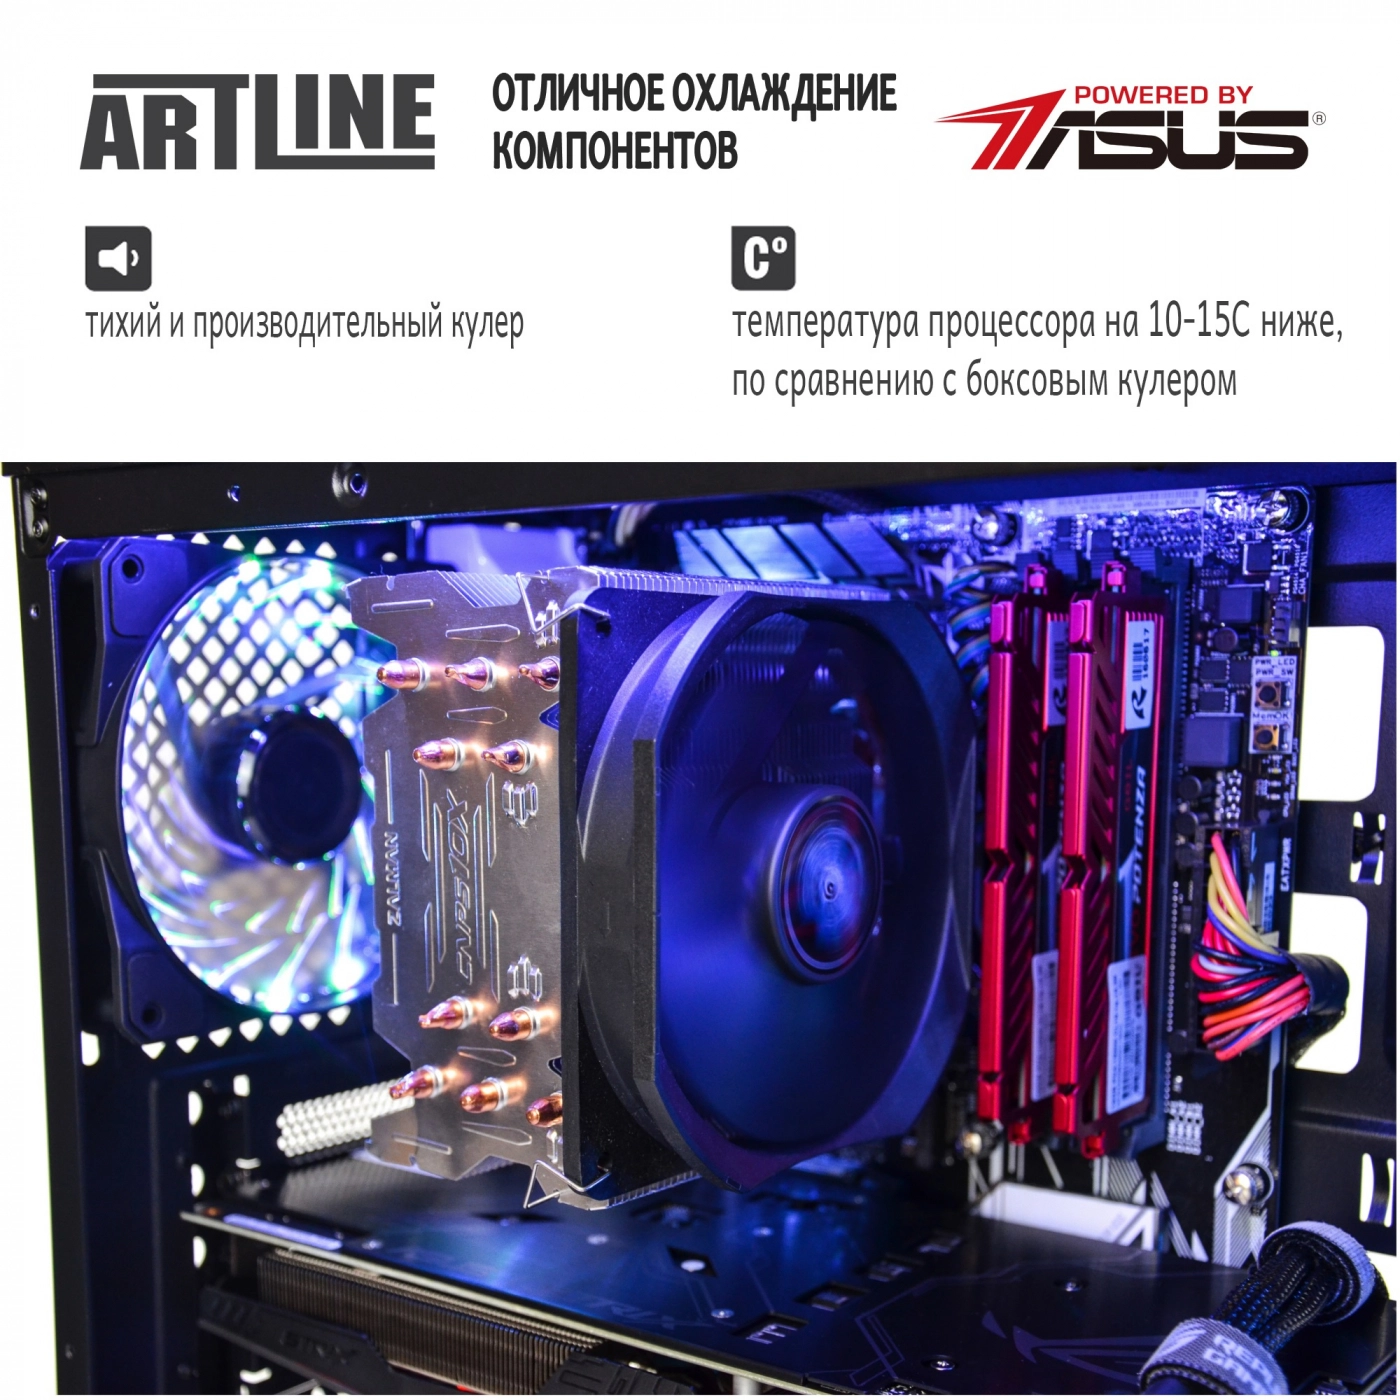 Купить Компьютер ARTLINE Gaming X95v25 - фото 4